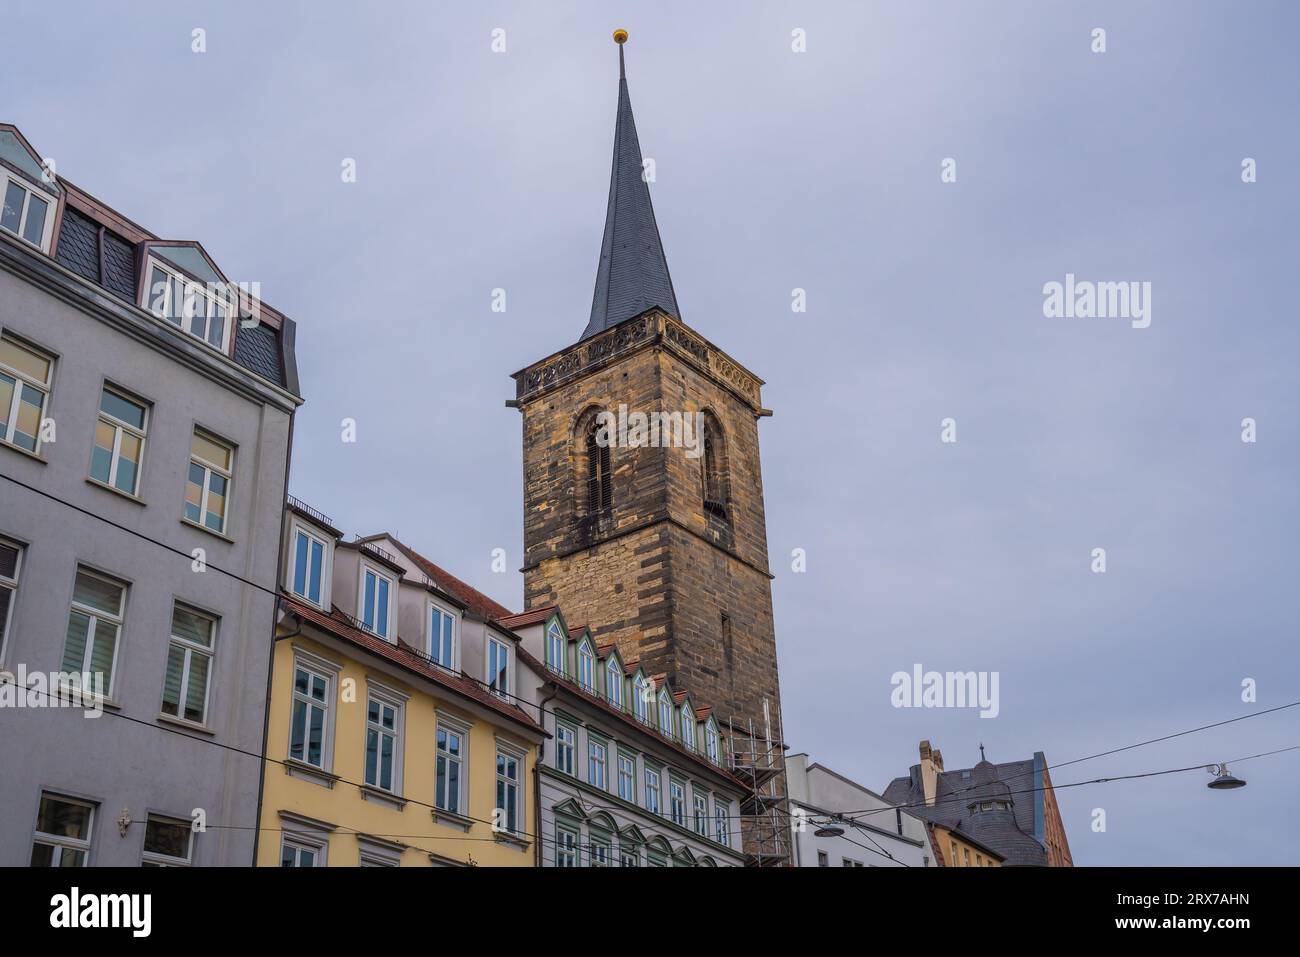 St. Tour de l'église de Bartholomew - Erfurt, Allemagne Banque D'Images